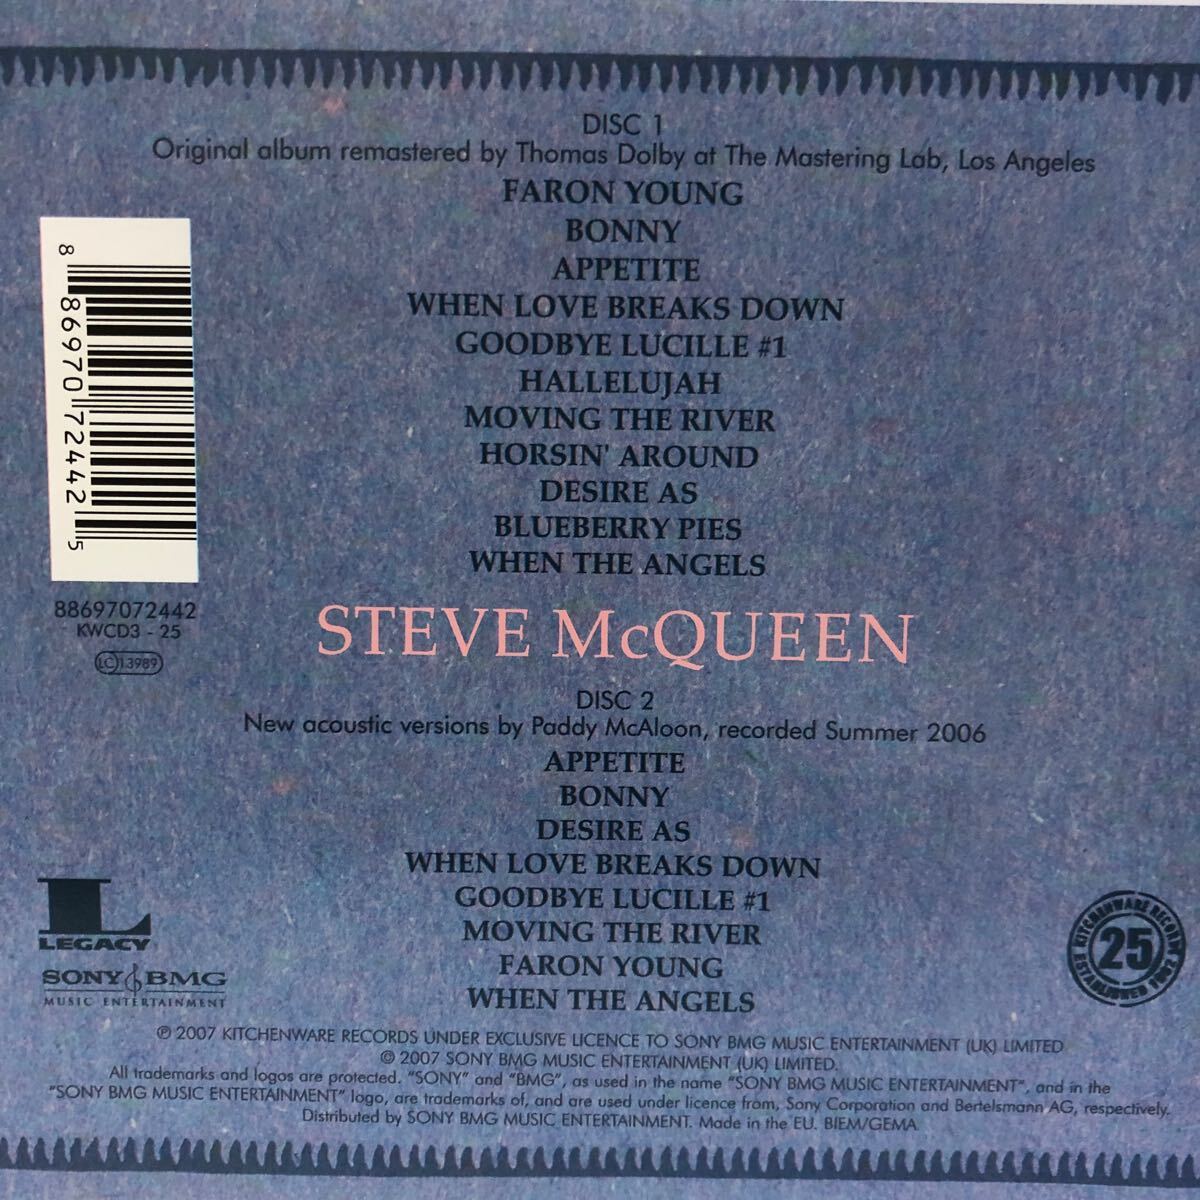 プリファブ・スプラウト 3アルバム 5CD prefab sprout / steve mcqueen 2CD輸入盤、38カラット・コレクション 2CD国内盤、swoon 1CD輸入盤_画像7